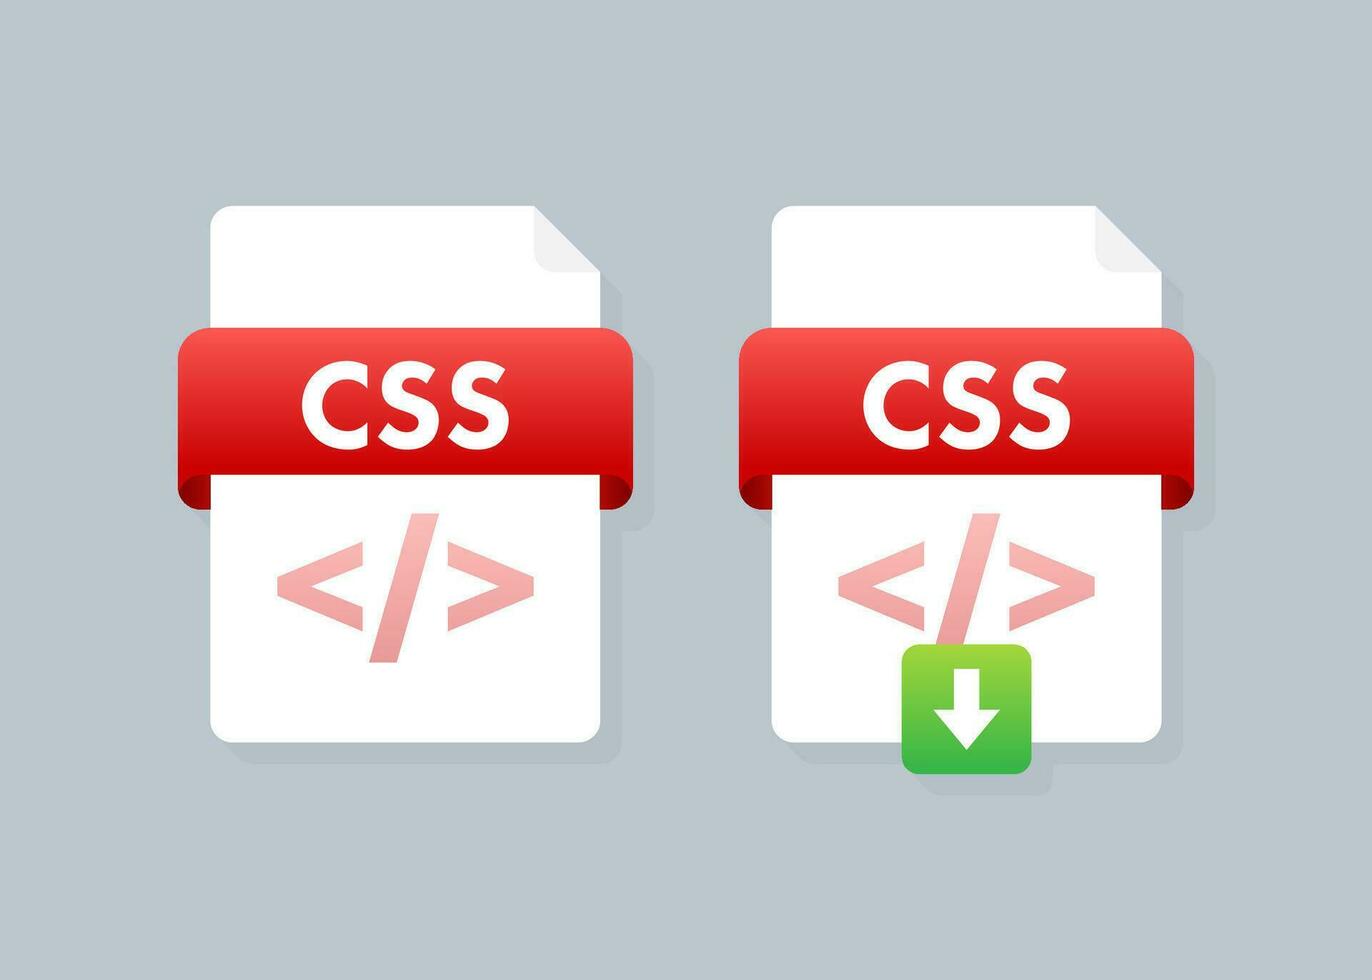 herunterladen CSS Taste auf Laptop Bildschirm. wird heruntergeladen dokumentieren Konzept. Datei mit CSS Etikette und Nieder Pfeil unterzeichnen. Vektor Illustration